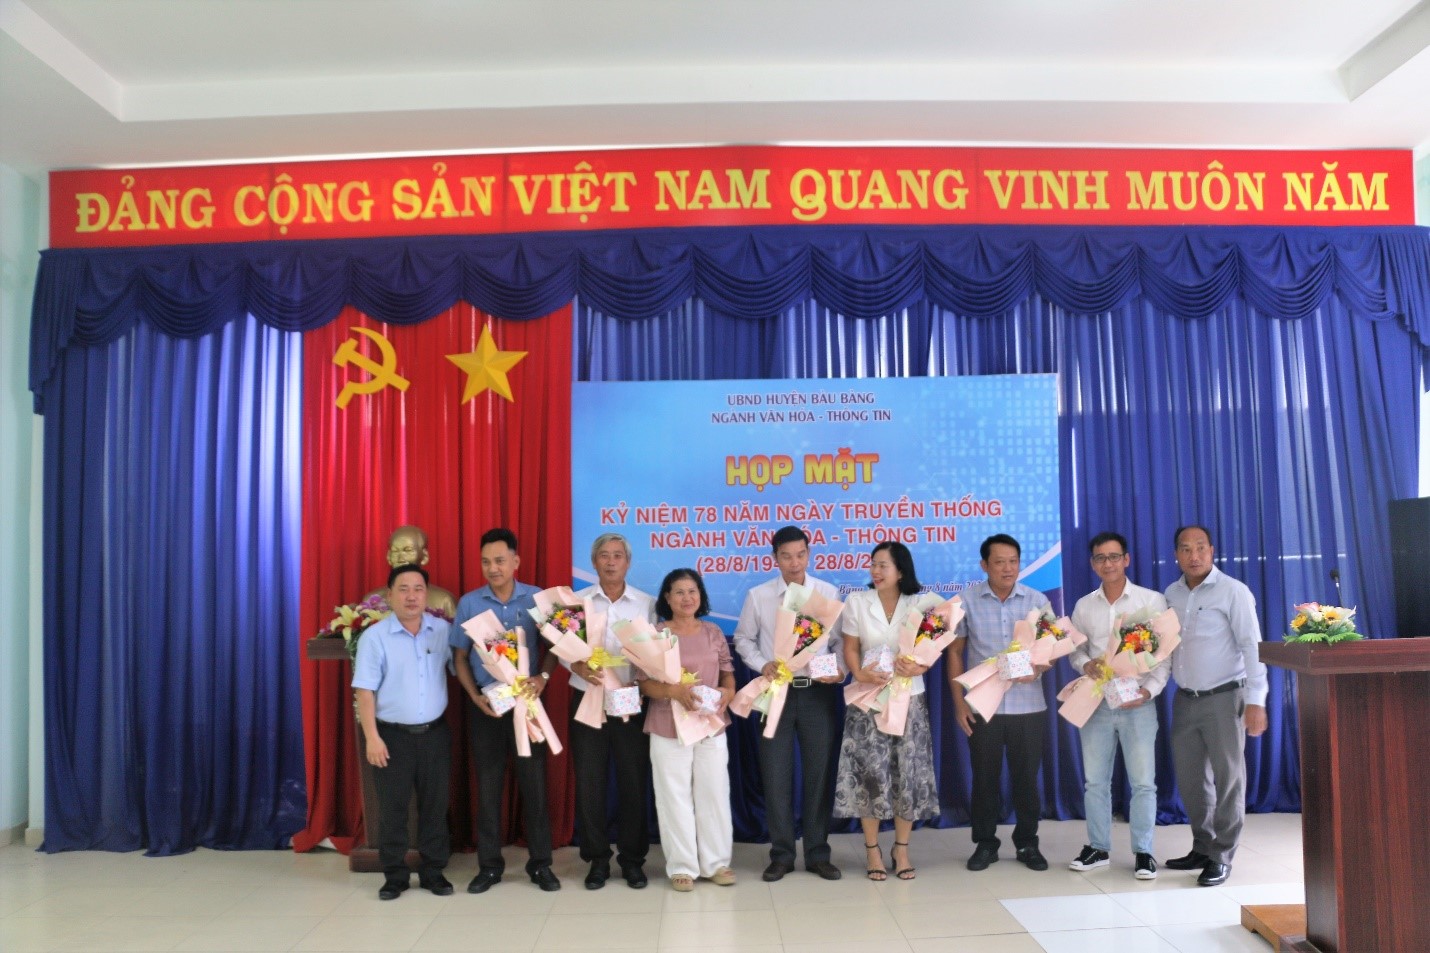 Lãnh đạo Ngành Văn hóa- Thông tin huyện Bàu Bàng trao hoa và quà cho nguyên lãnh đạo Ngành Văn hóa Thông tin.